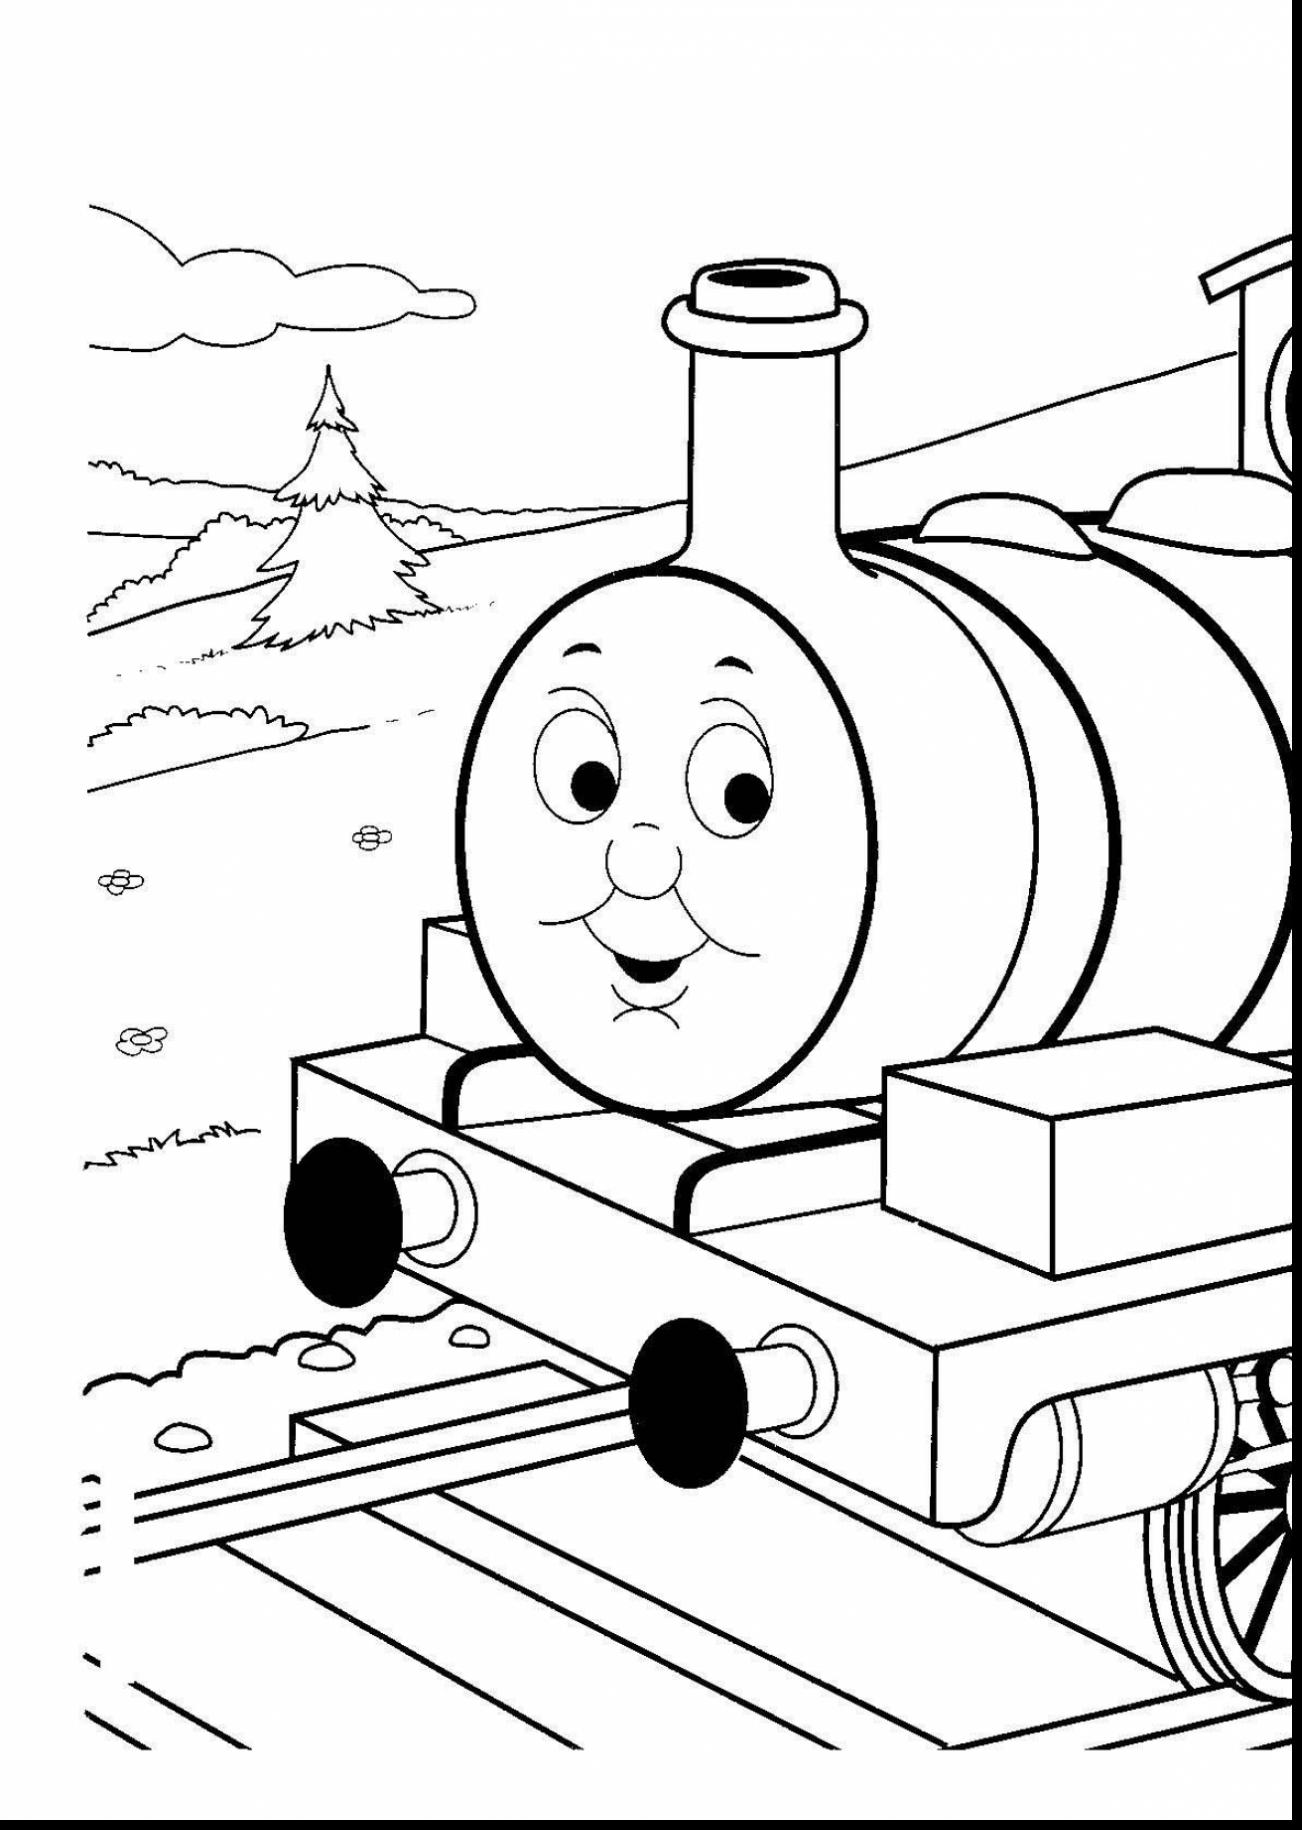 Thomas Train Drawing at GetDrawings | Free download